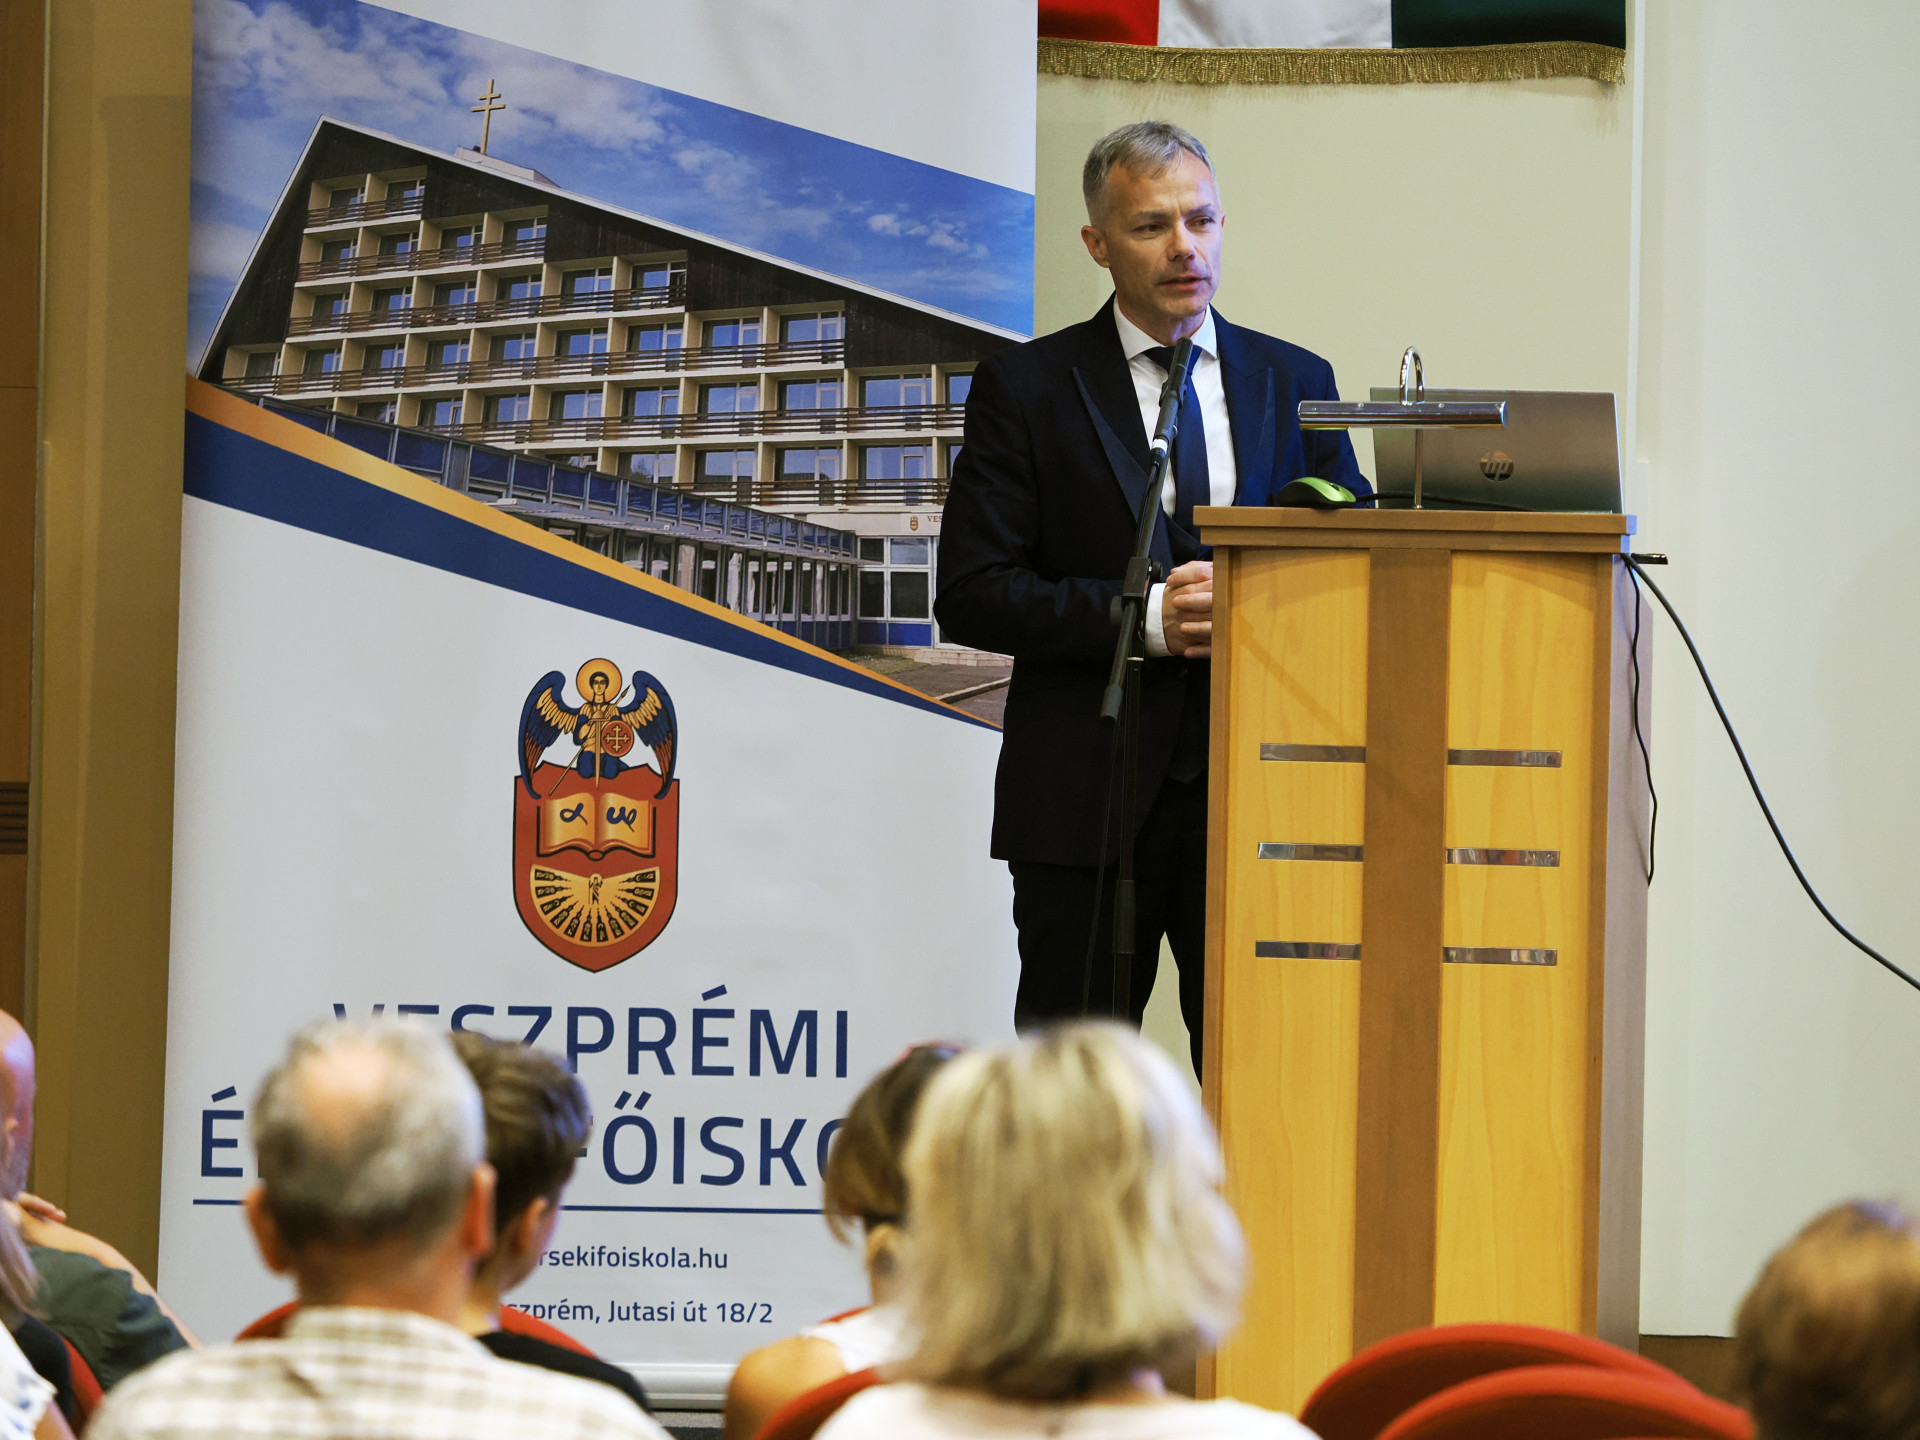 Tehetségmentor-programját mutatta be a Veszprémi Érseki Főiskola